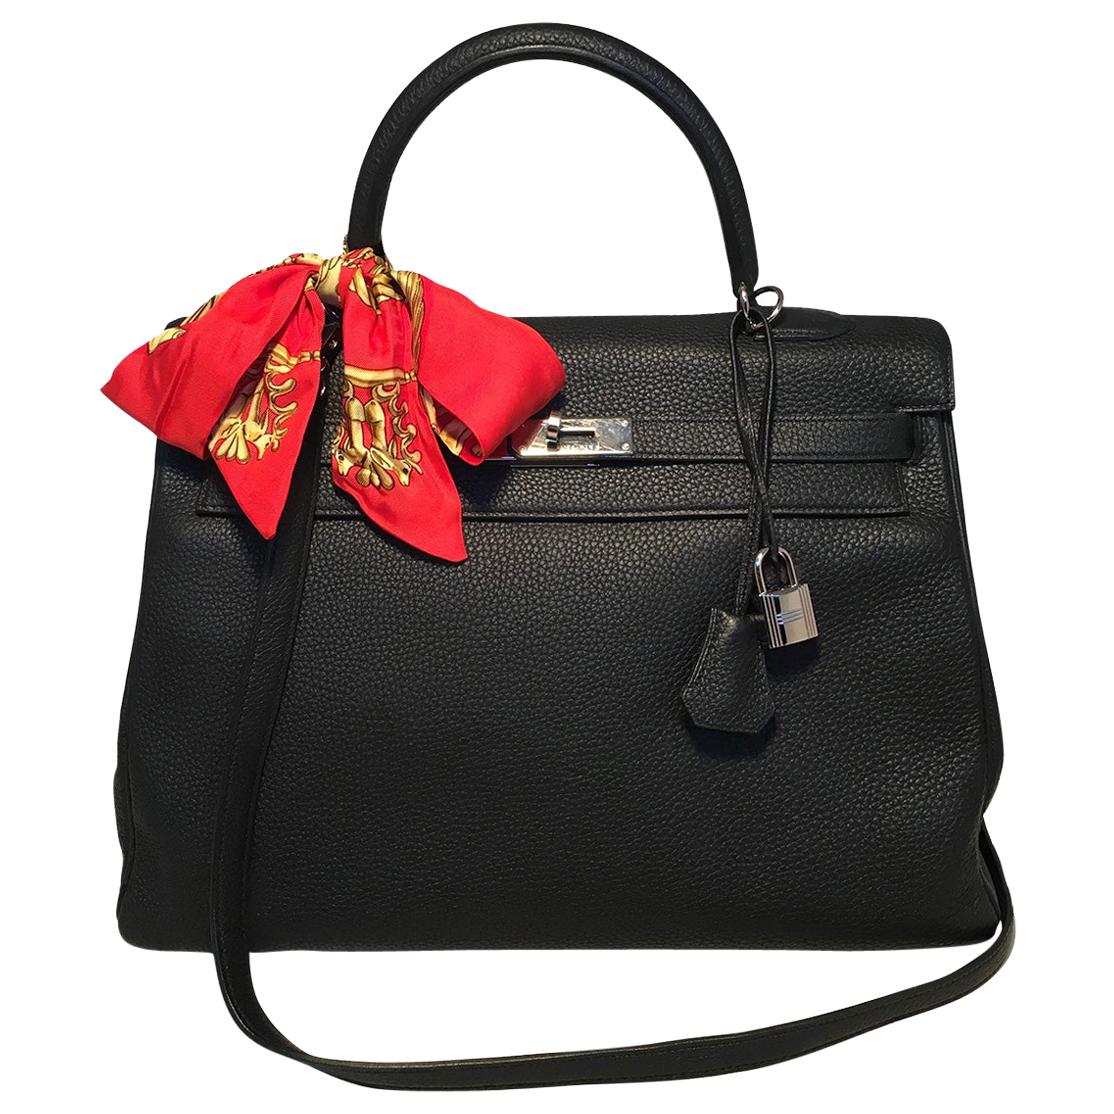 Hermes Black Togo Leather 35 cm Kelly Bag with Strap